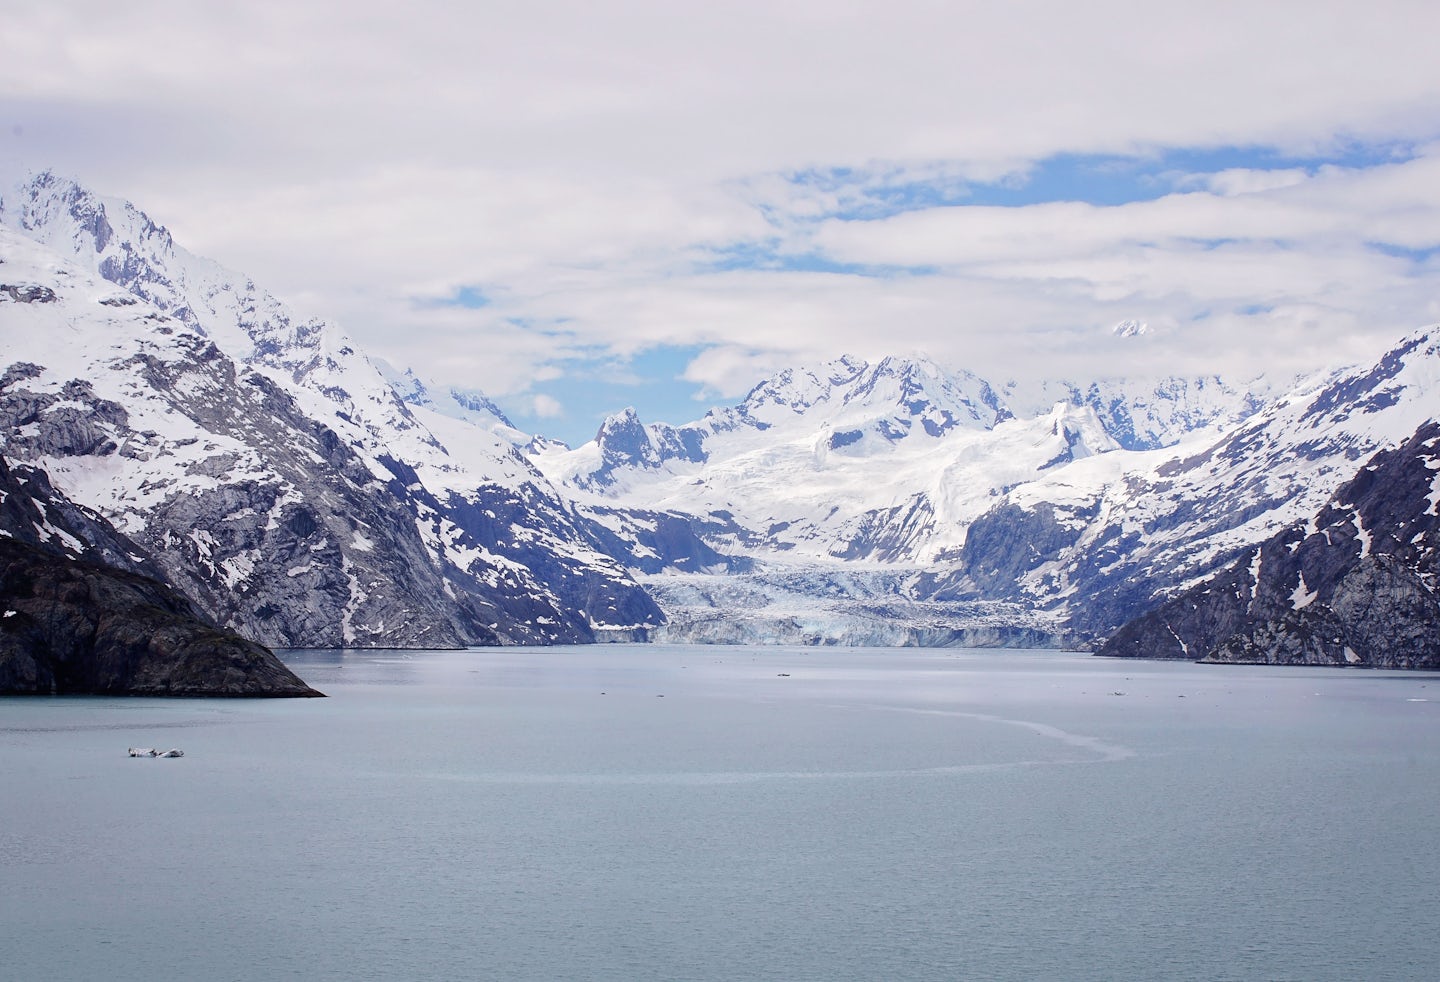 The majestic Glacier Bay